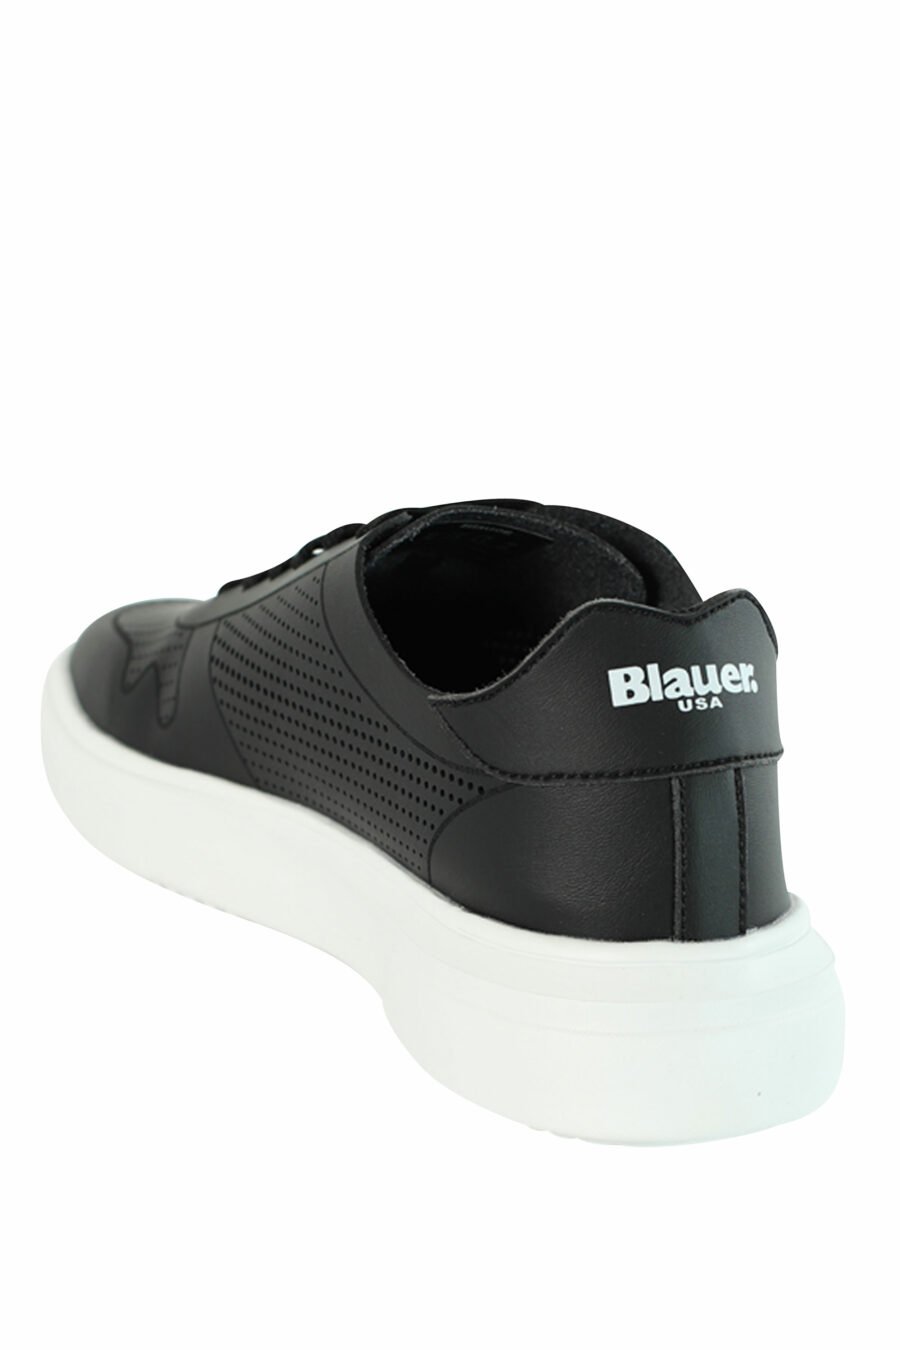 Zapatillas negras "BLAIR" transpirables con logo blanco - 8058156492004 4